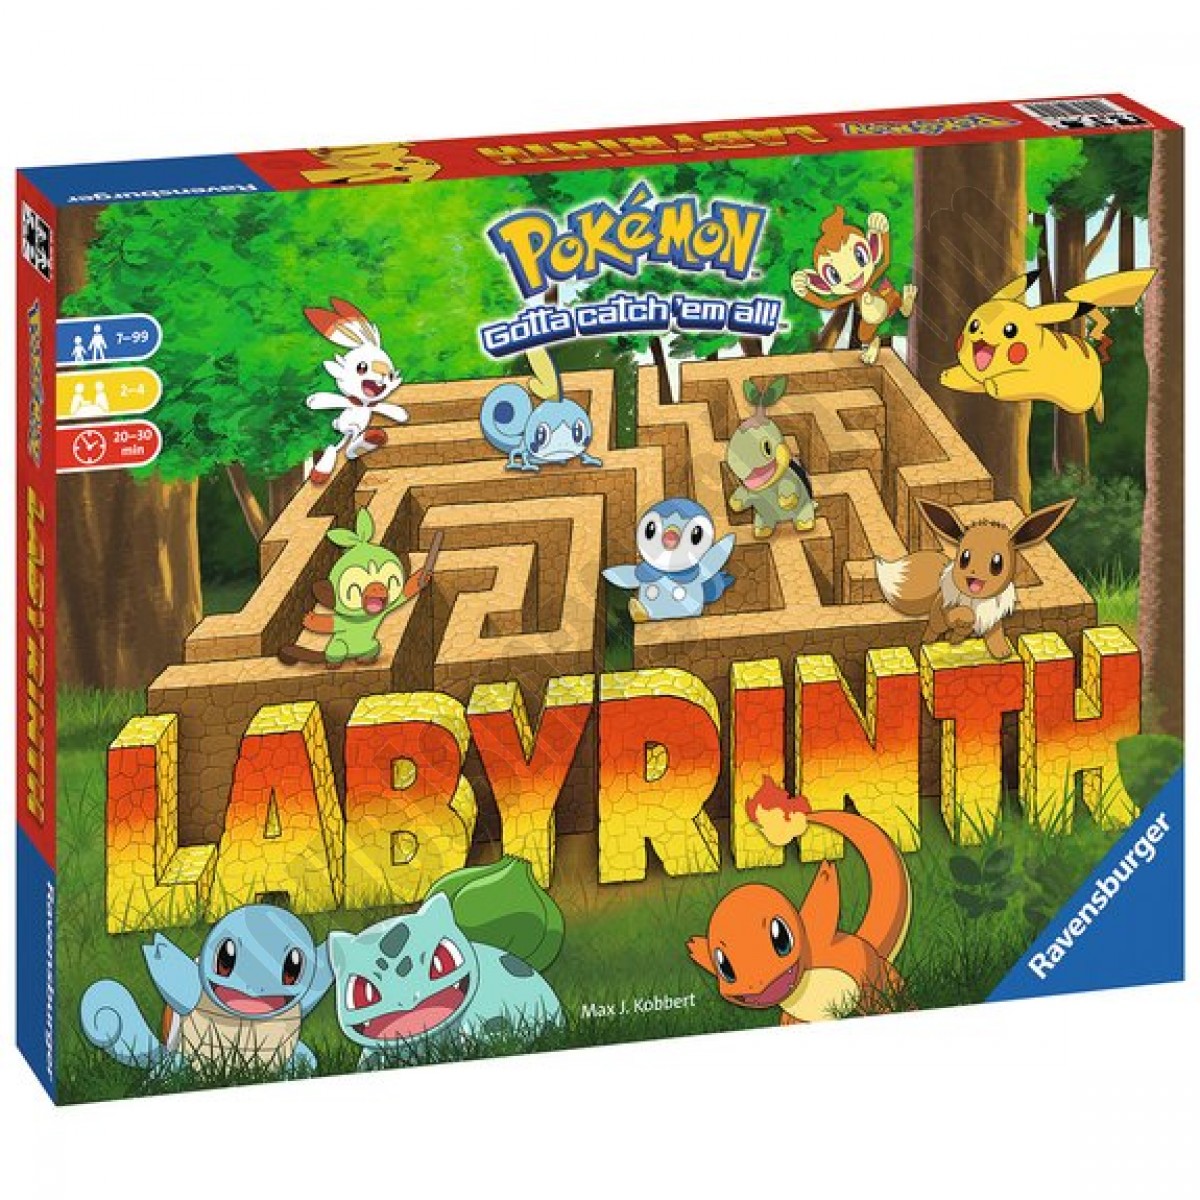 Labyrinthe Pokémon ◆◆◆ Nouveau - Labyrinthe Pokémon ◆◆◆ Nouveau